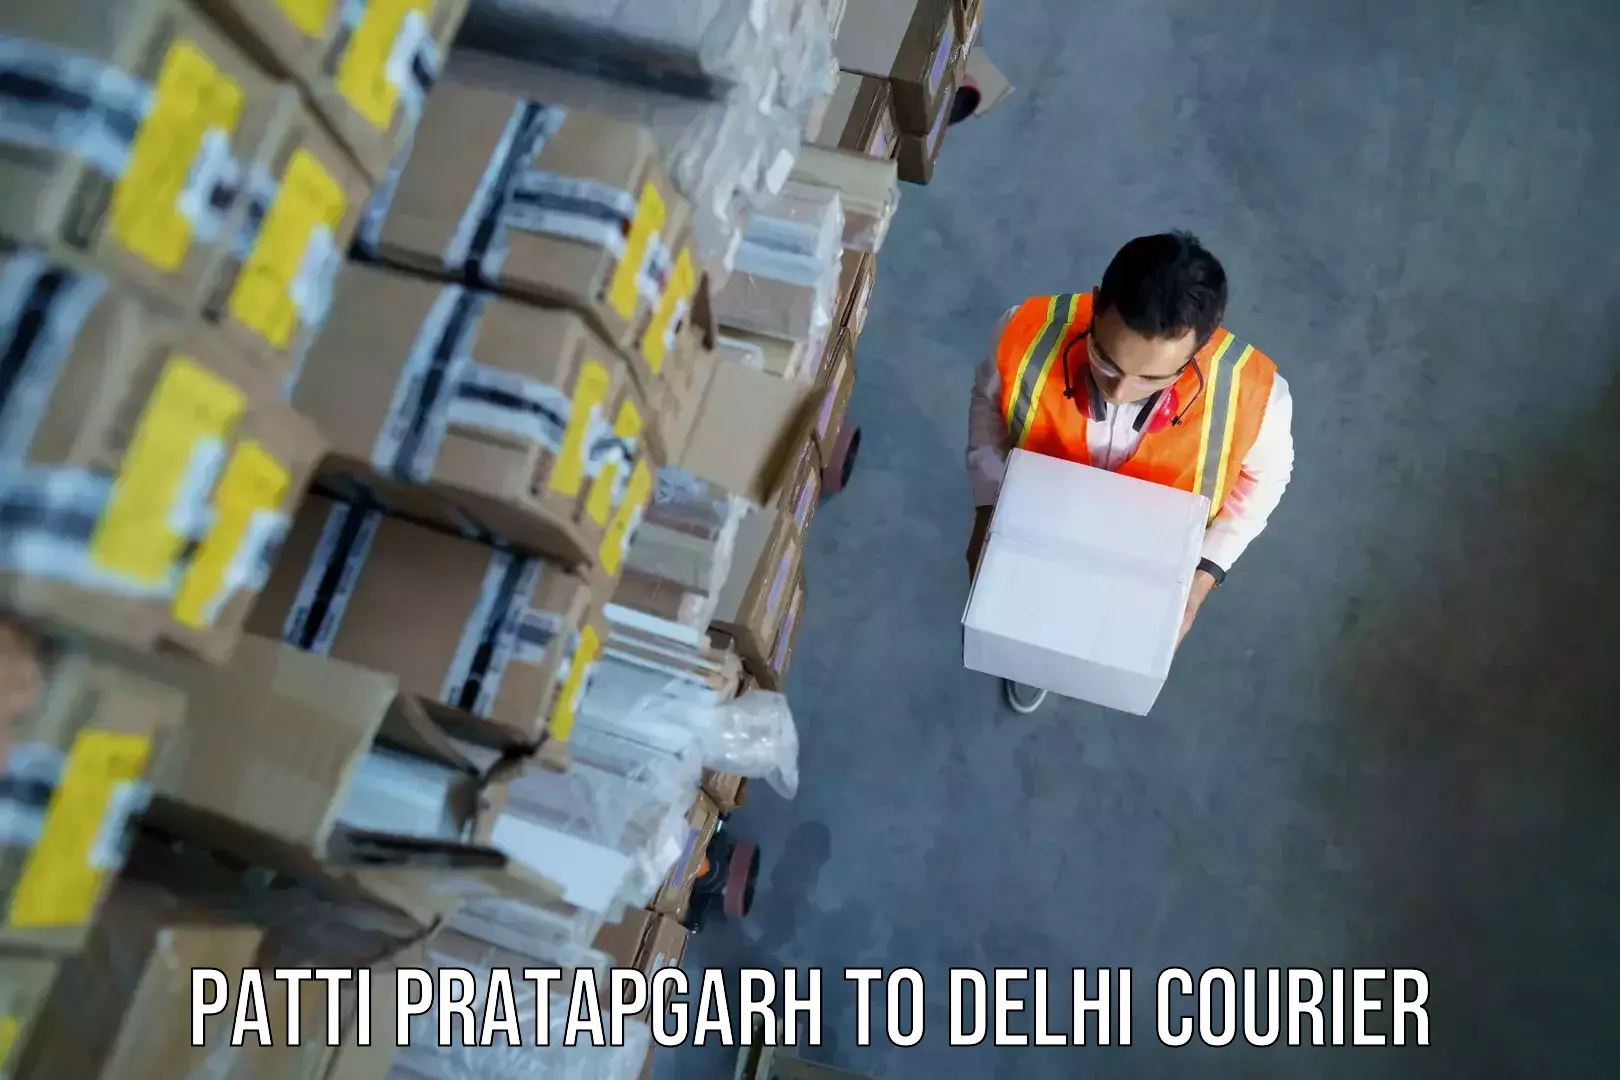 Luggage delivery providers Patti Pratapgarh to Burari